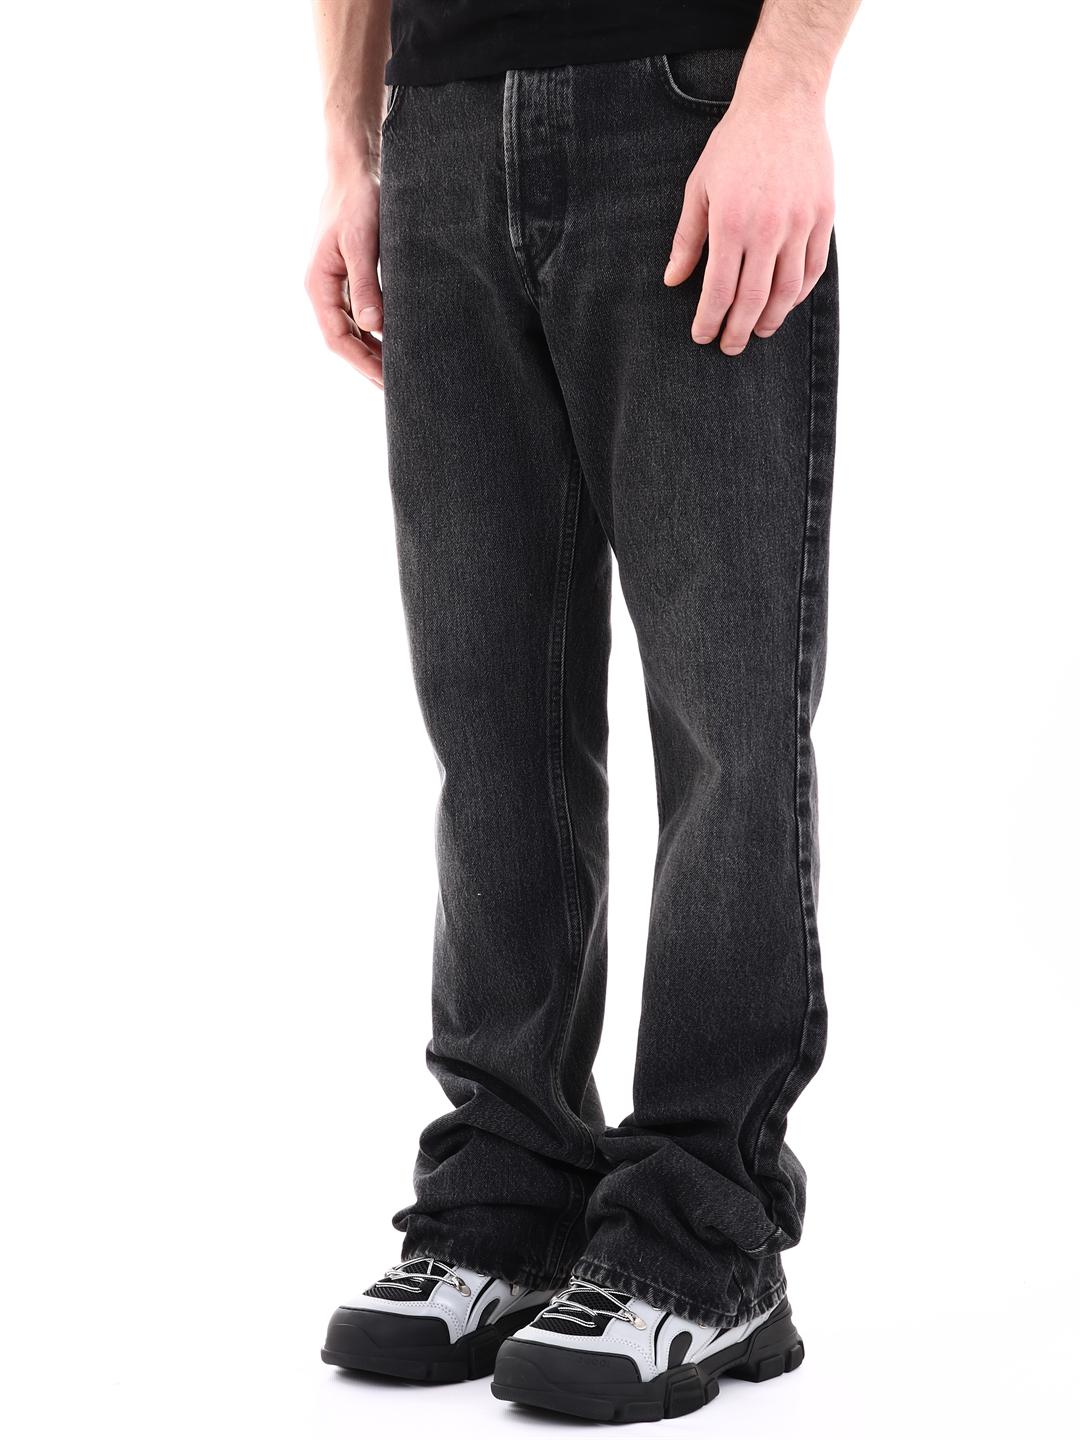 balenciaga with bootcut jeans